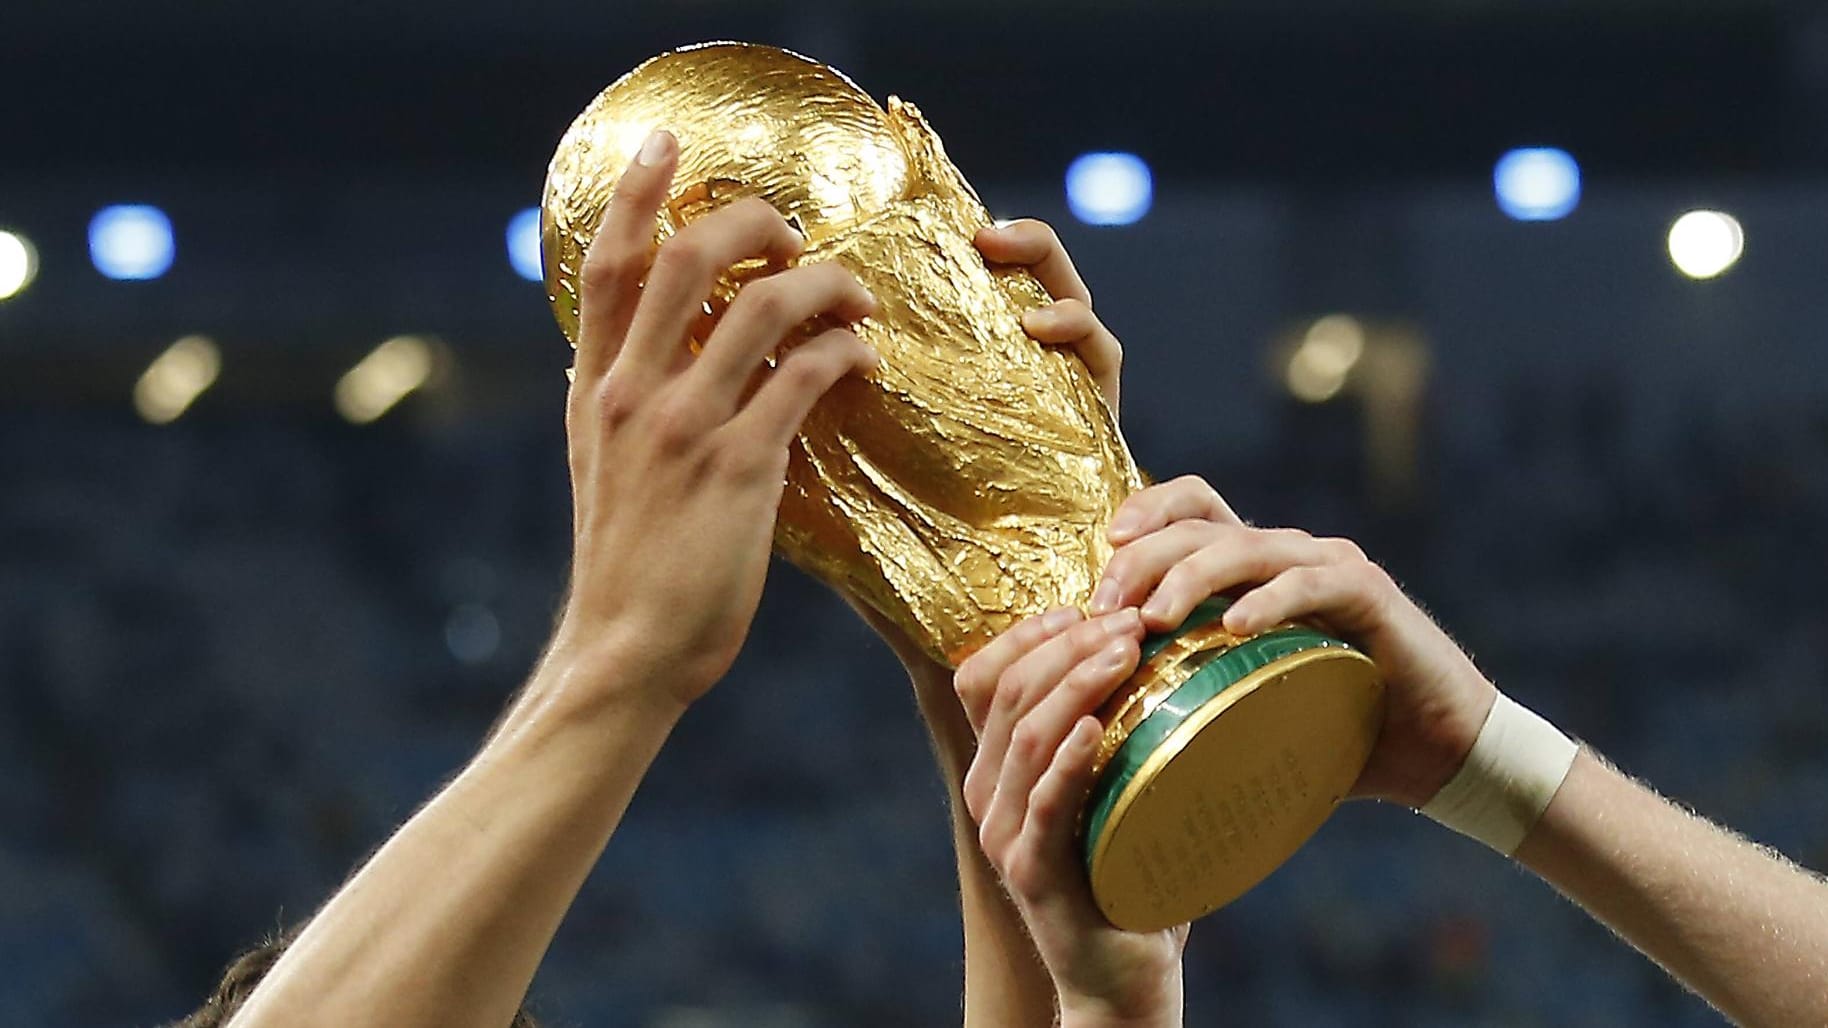 Oxford-Mathematiker sagt WM-Sieger in Katar voraus – Überraschung im Finale